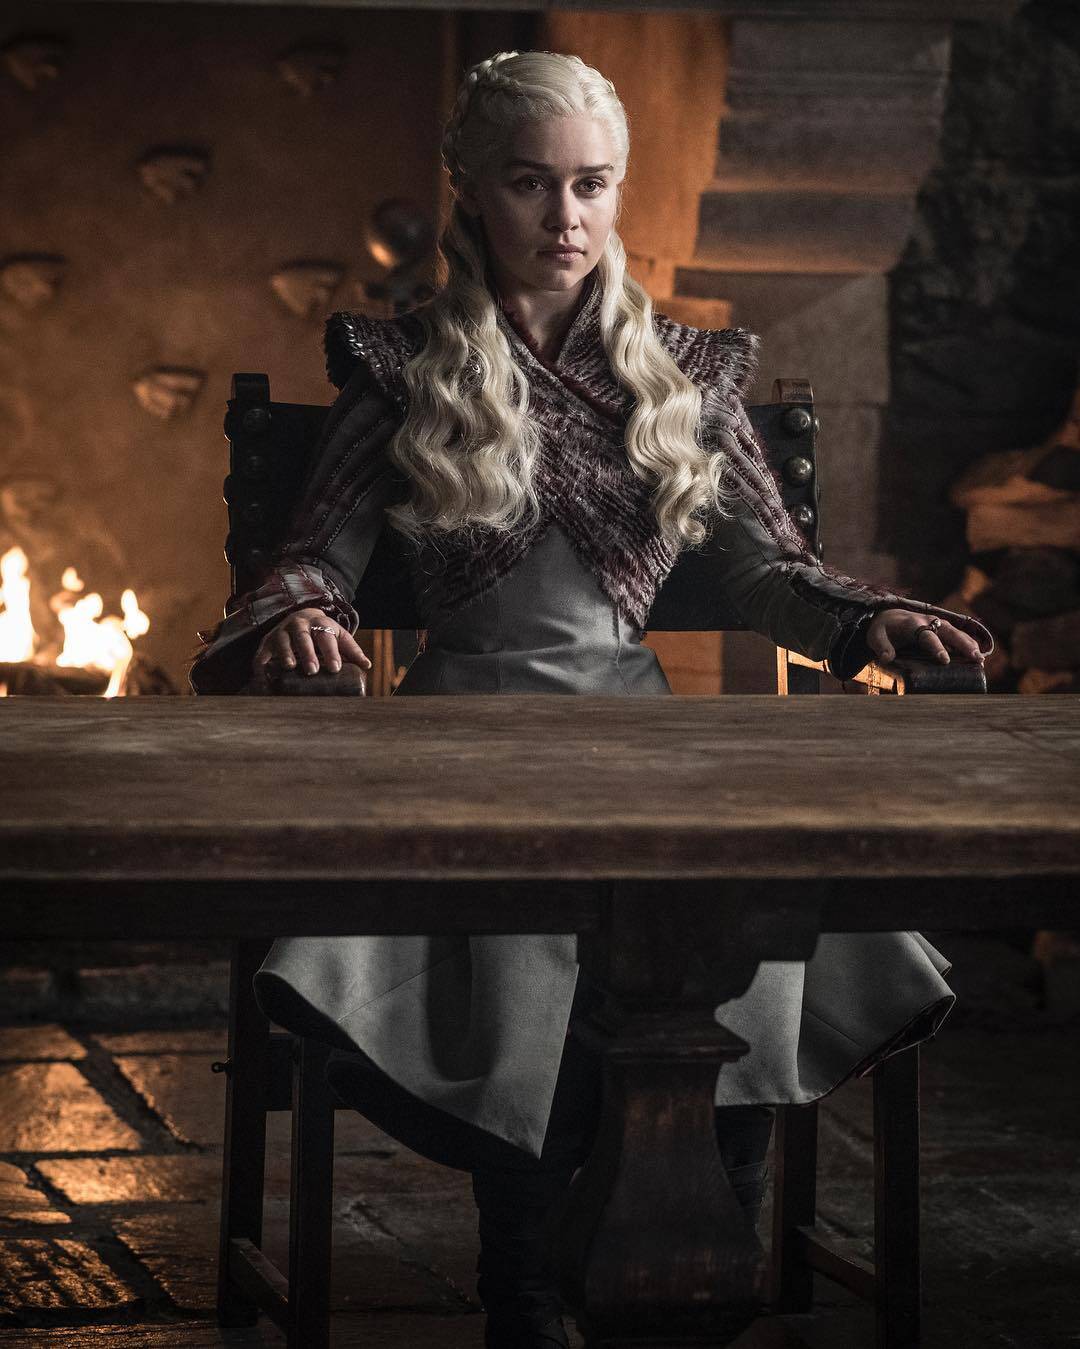 Novas imagens da última temporada de "Game of Thrones" elevam ansiedade dos fãs. Foto: Divulgação/HBO